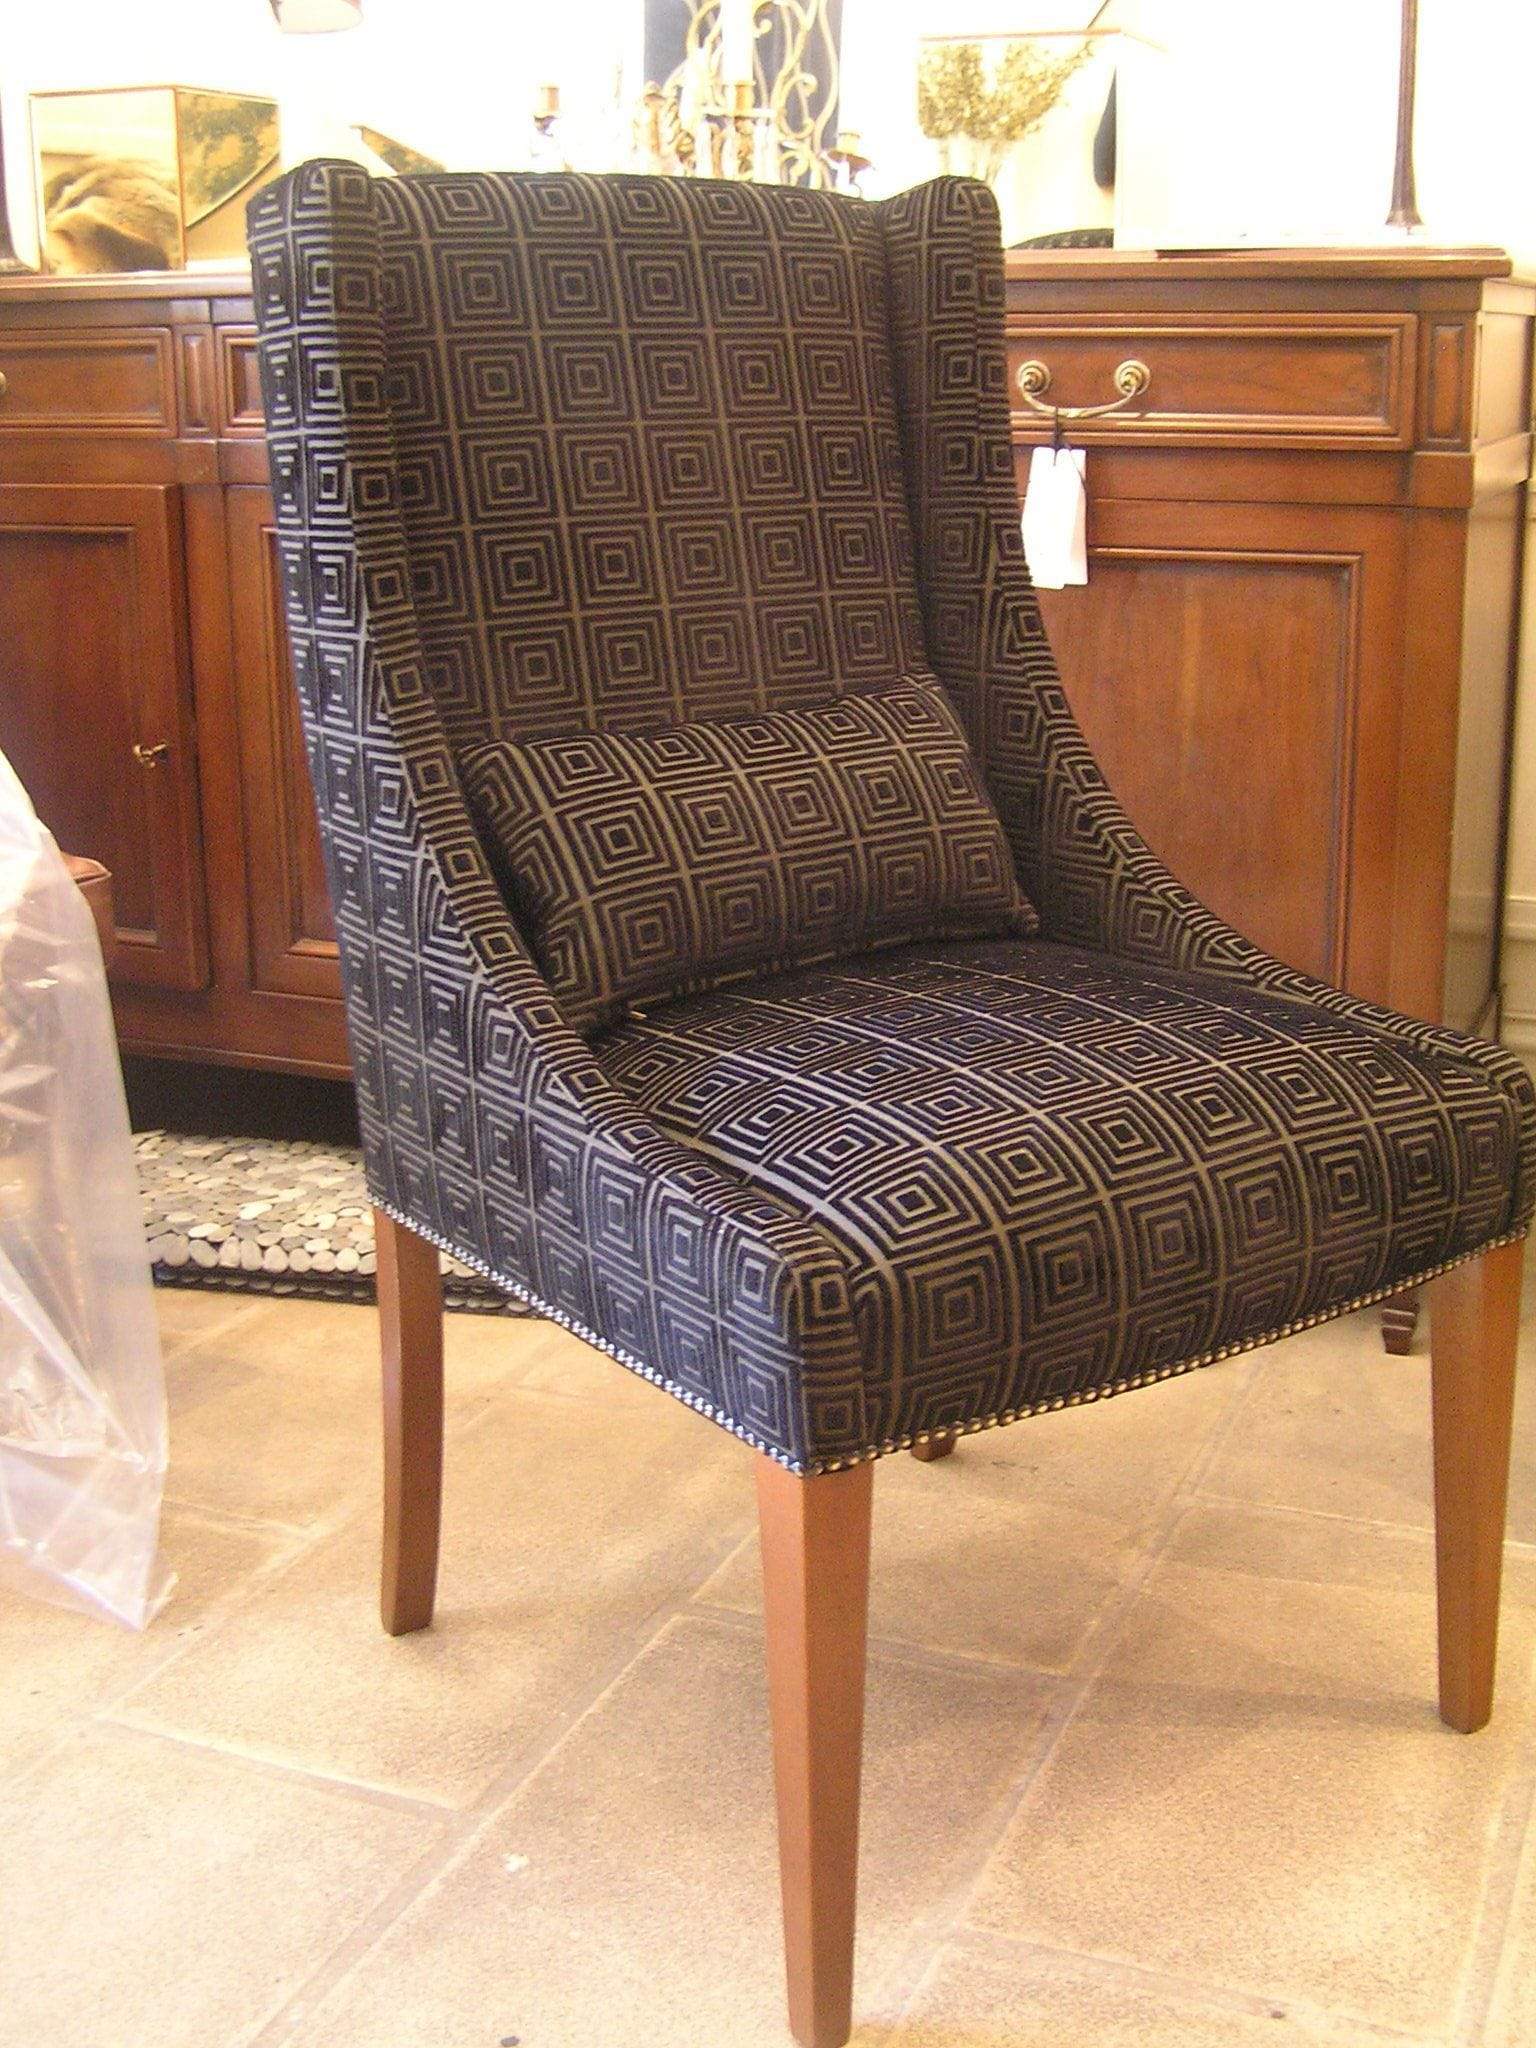 Gaudion Furniture Armchair Manhattan Chair plus fabric Manhattan Chair Custom Made